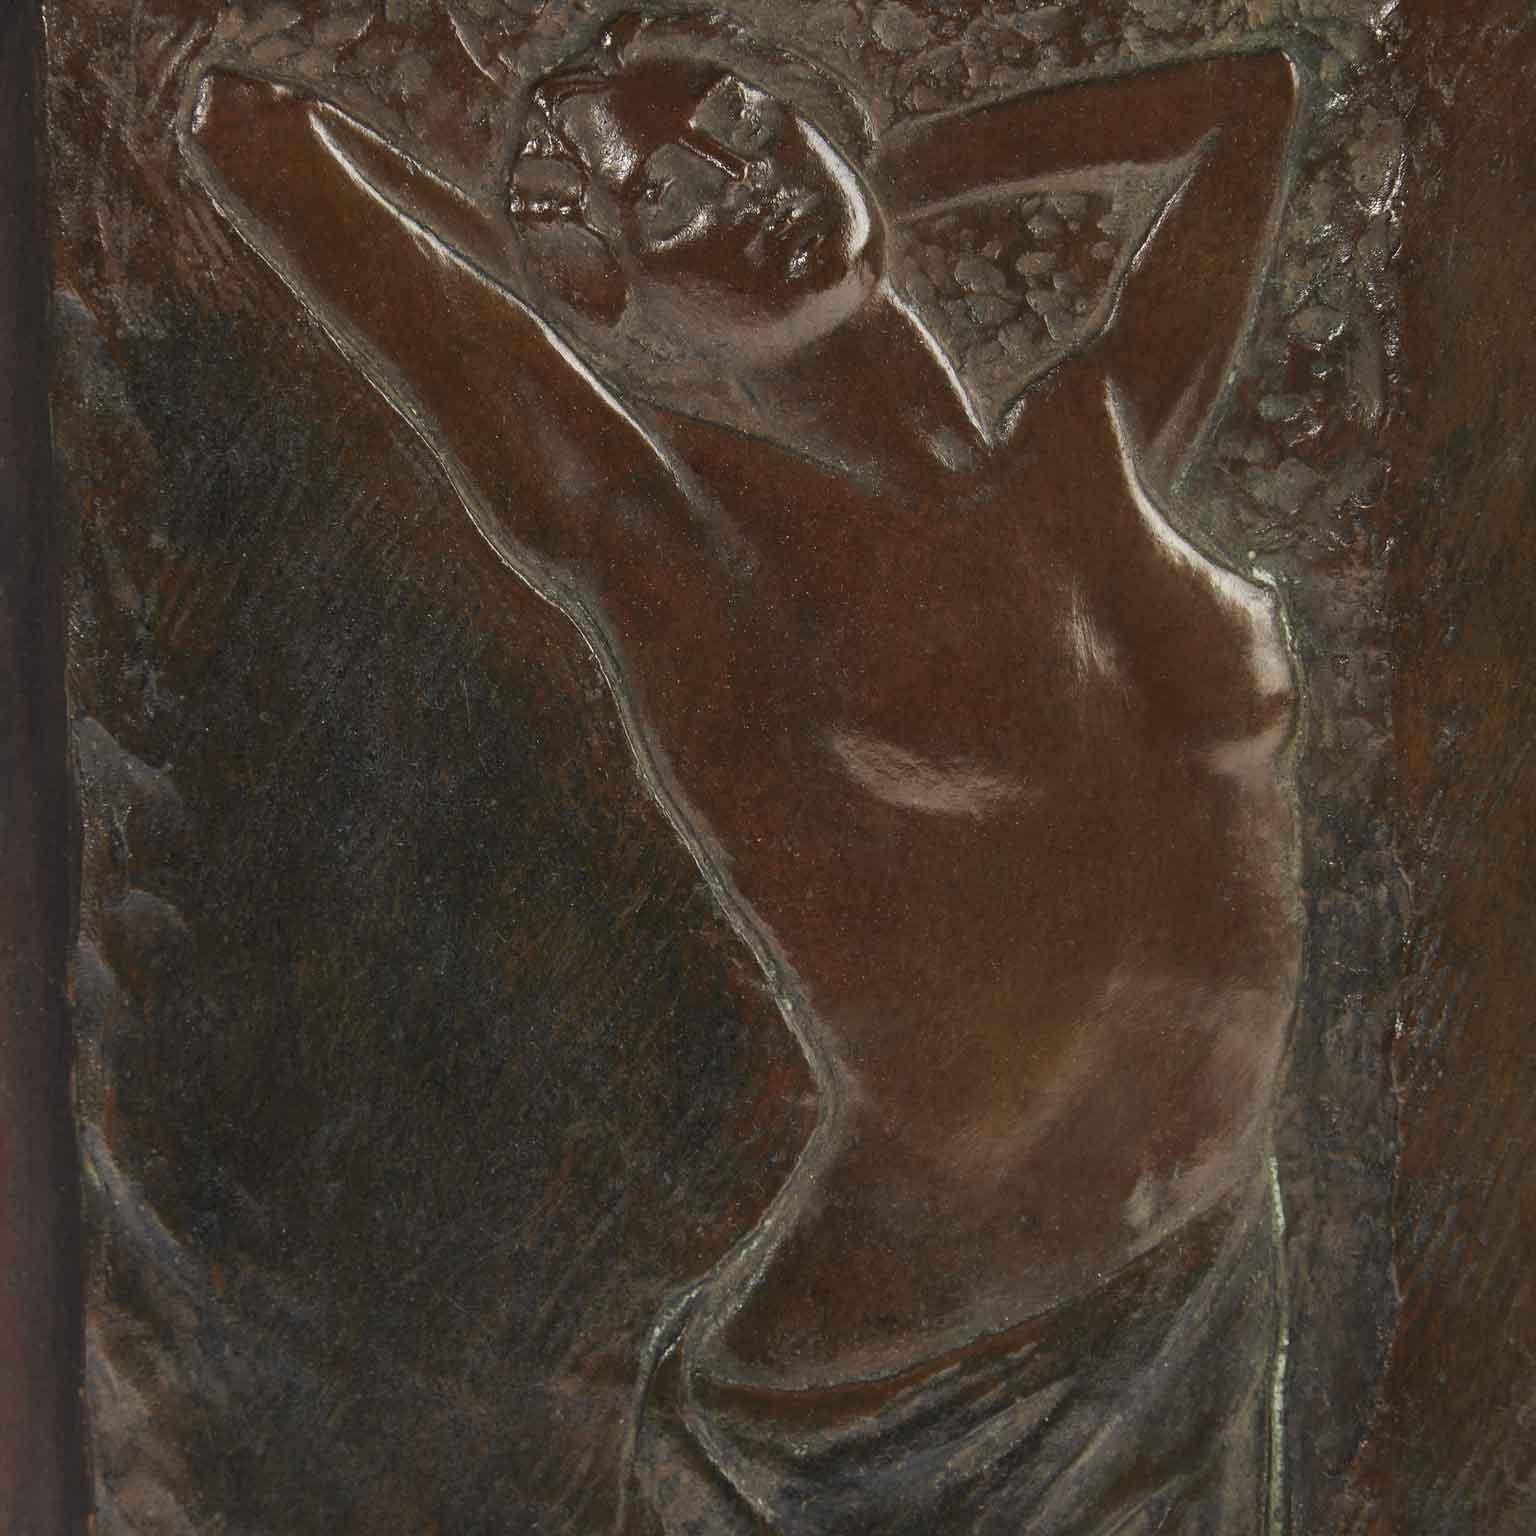 Italienische Jugendstilskulptur aus Bronzeskulptur aus dem frühen 20. Jahrhundert, ein Flachrelief, das eine teilweise nackte Frau von Goria Lamberto darstellt, signiert von L.Goria Asti (Tortona 1863 Asti 1927). Montiert auf einer Holzplatte, ist